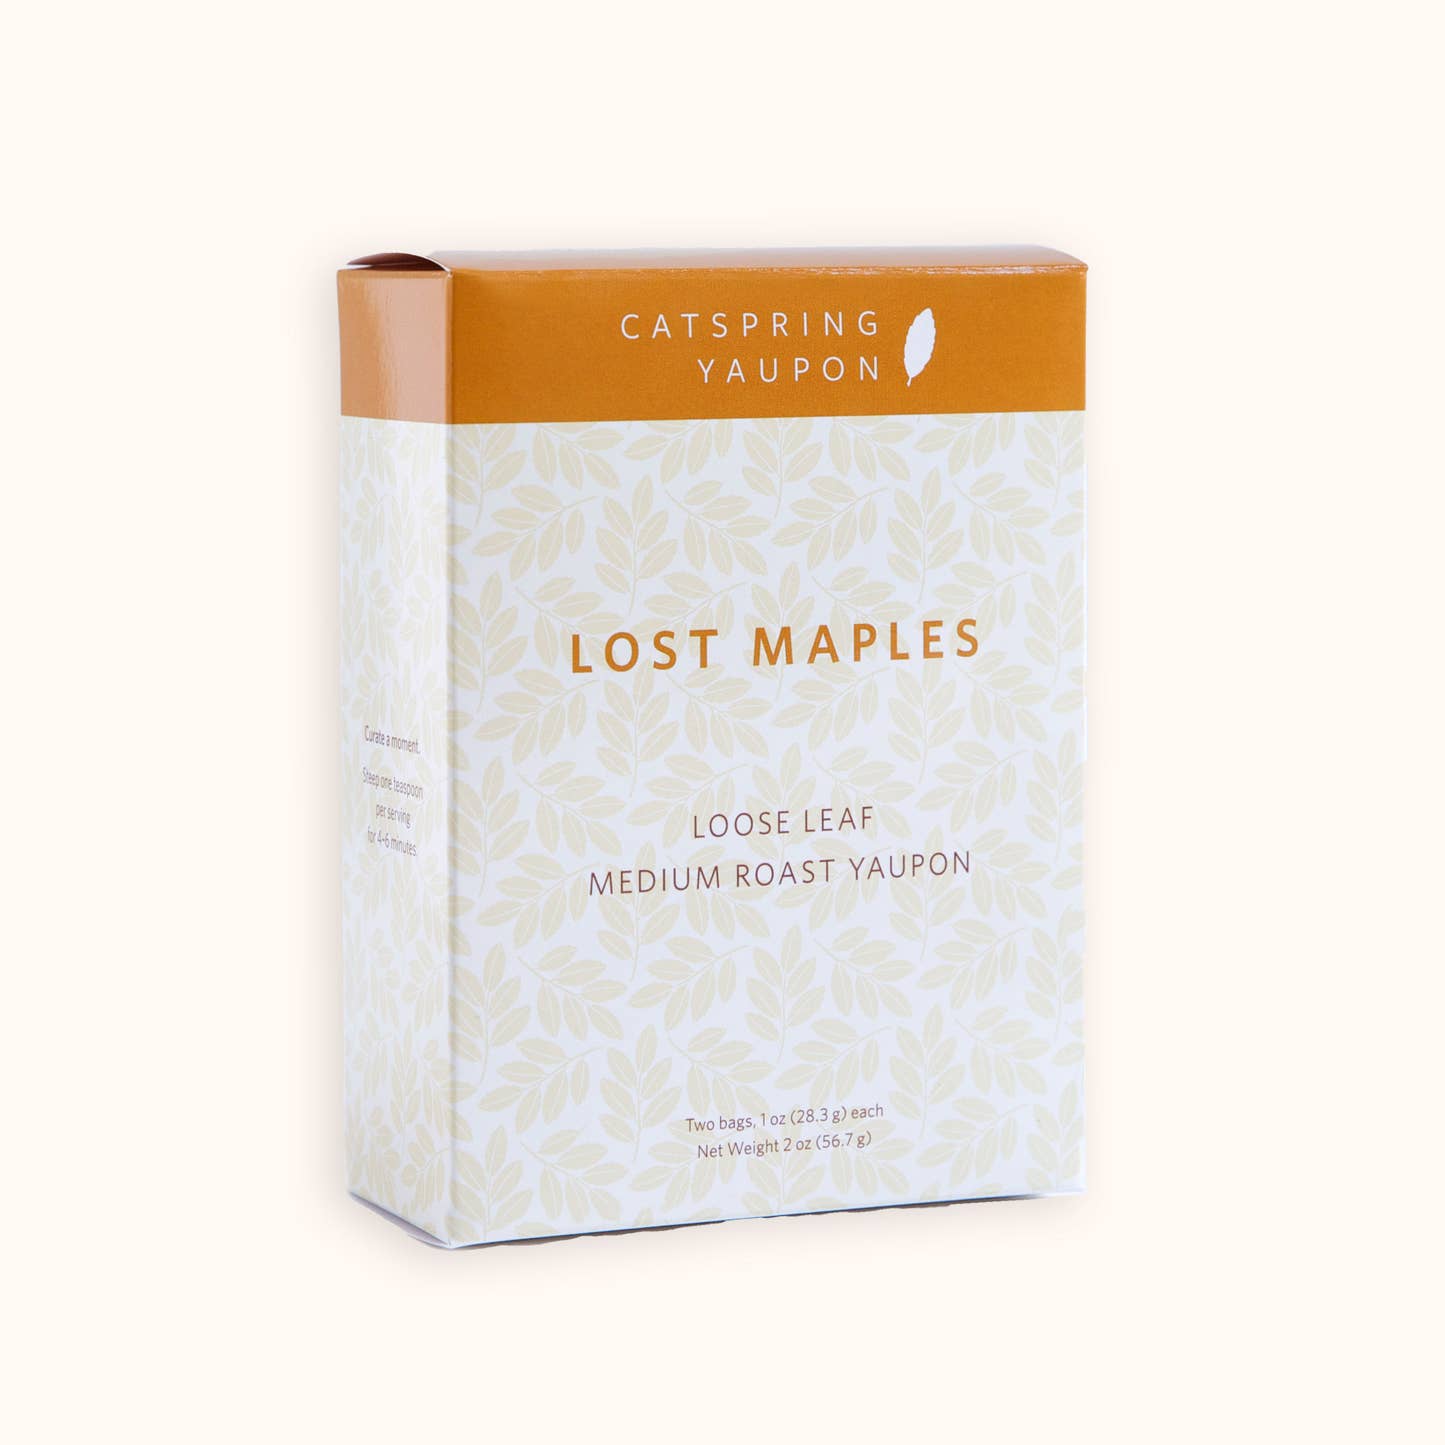 Lost Maples Medium Roast Yaupon